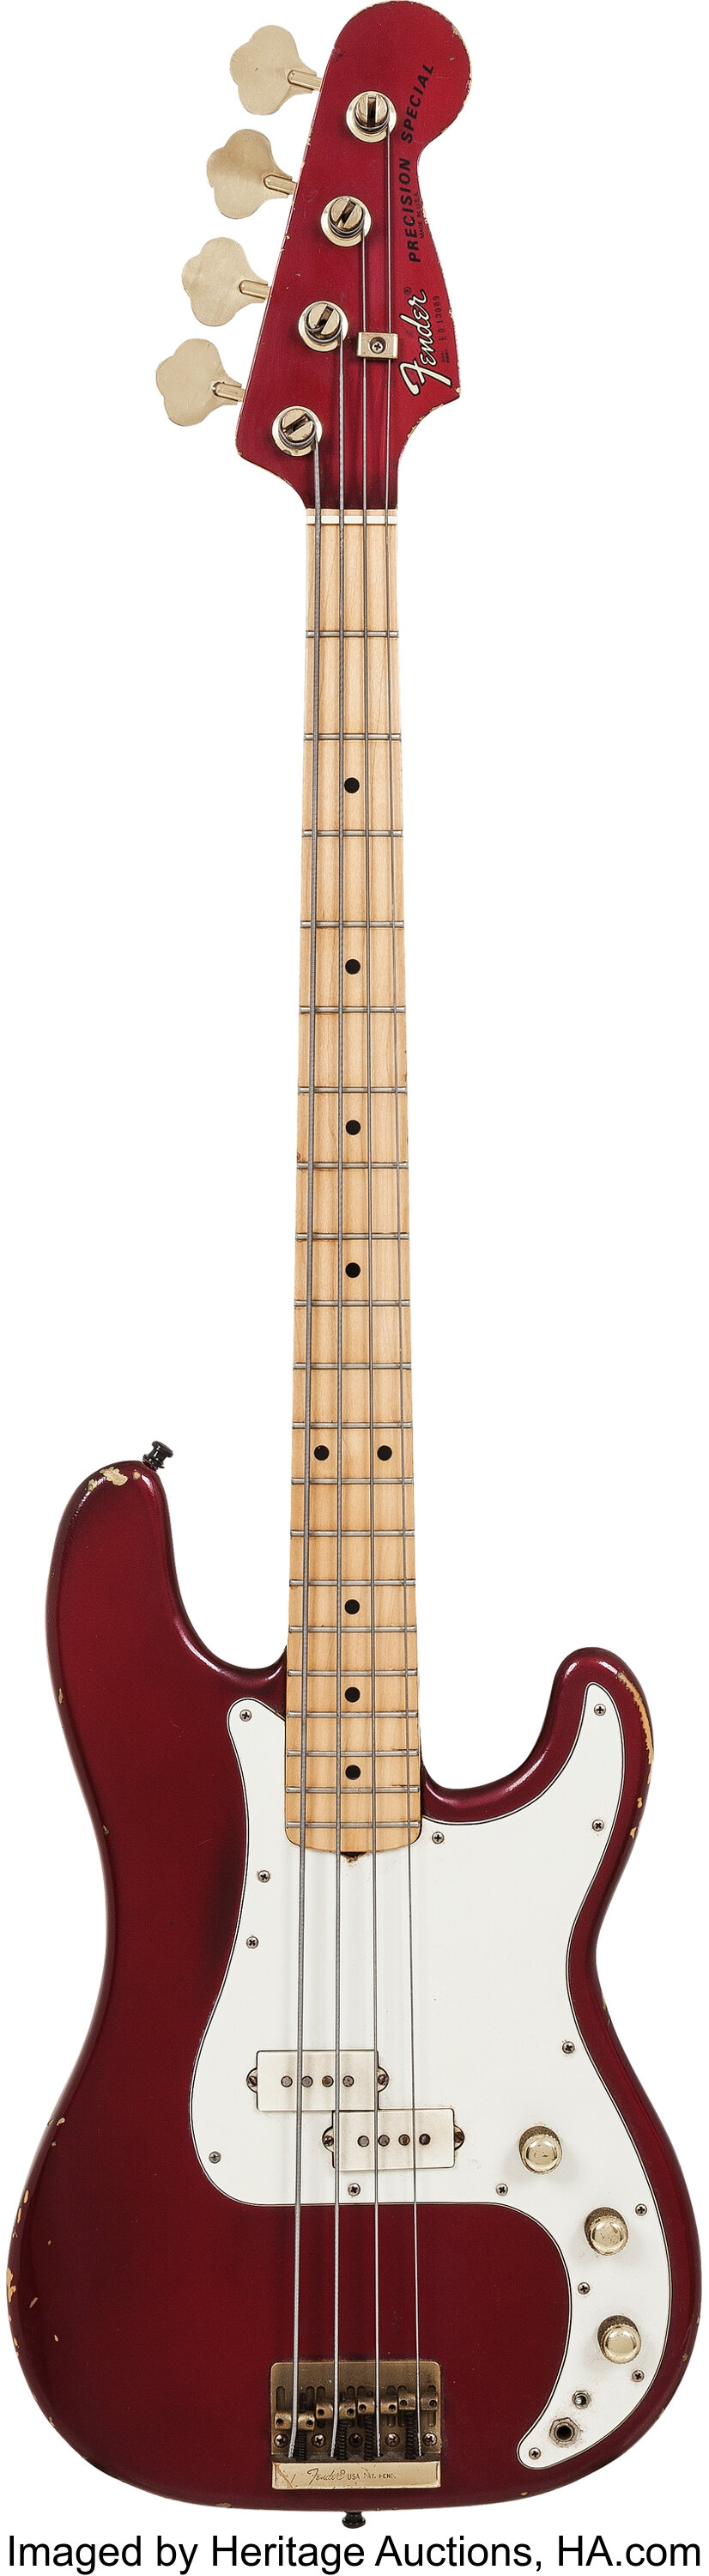 1980 Fender Precision Special Bass